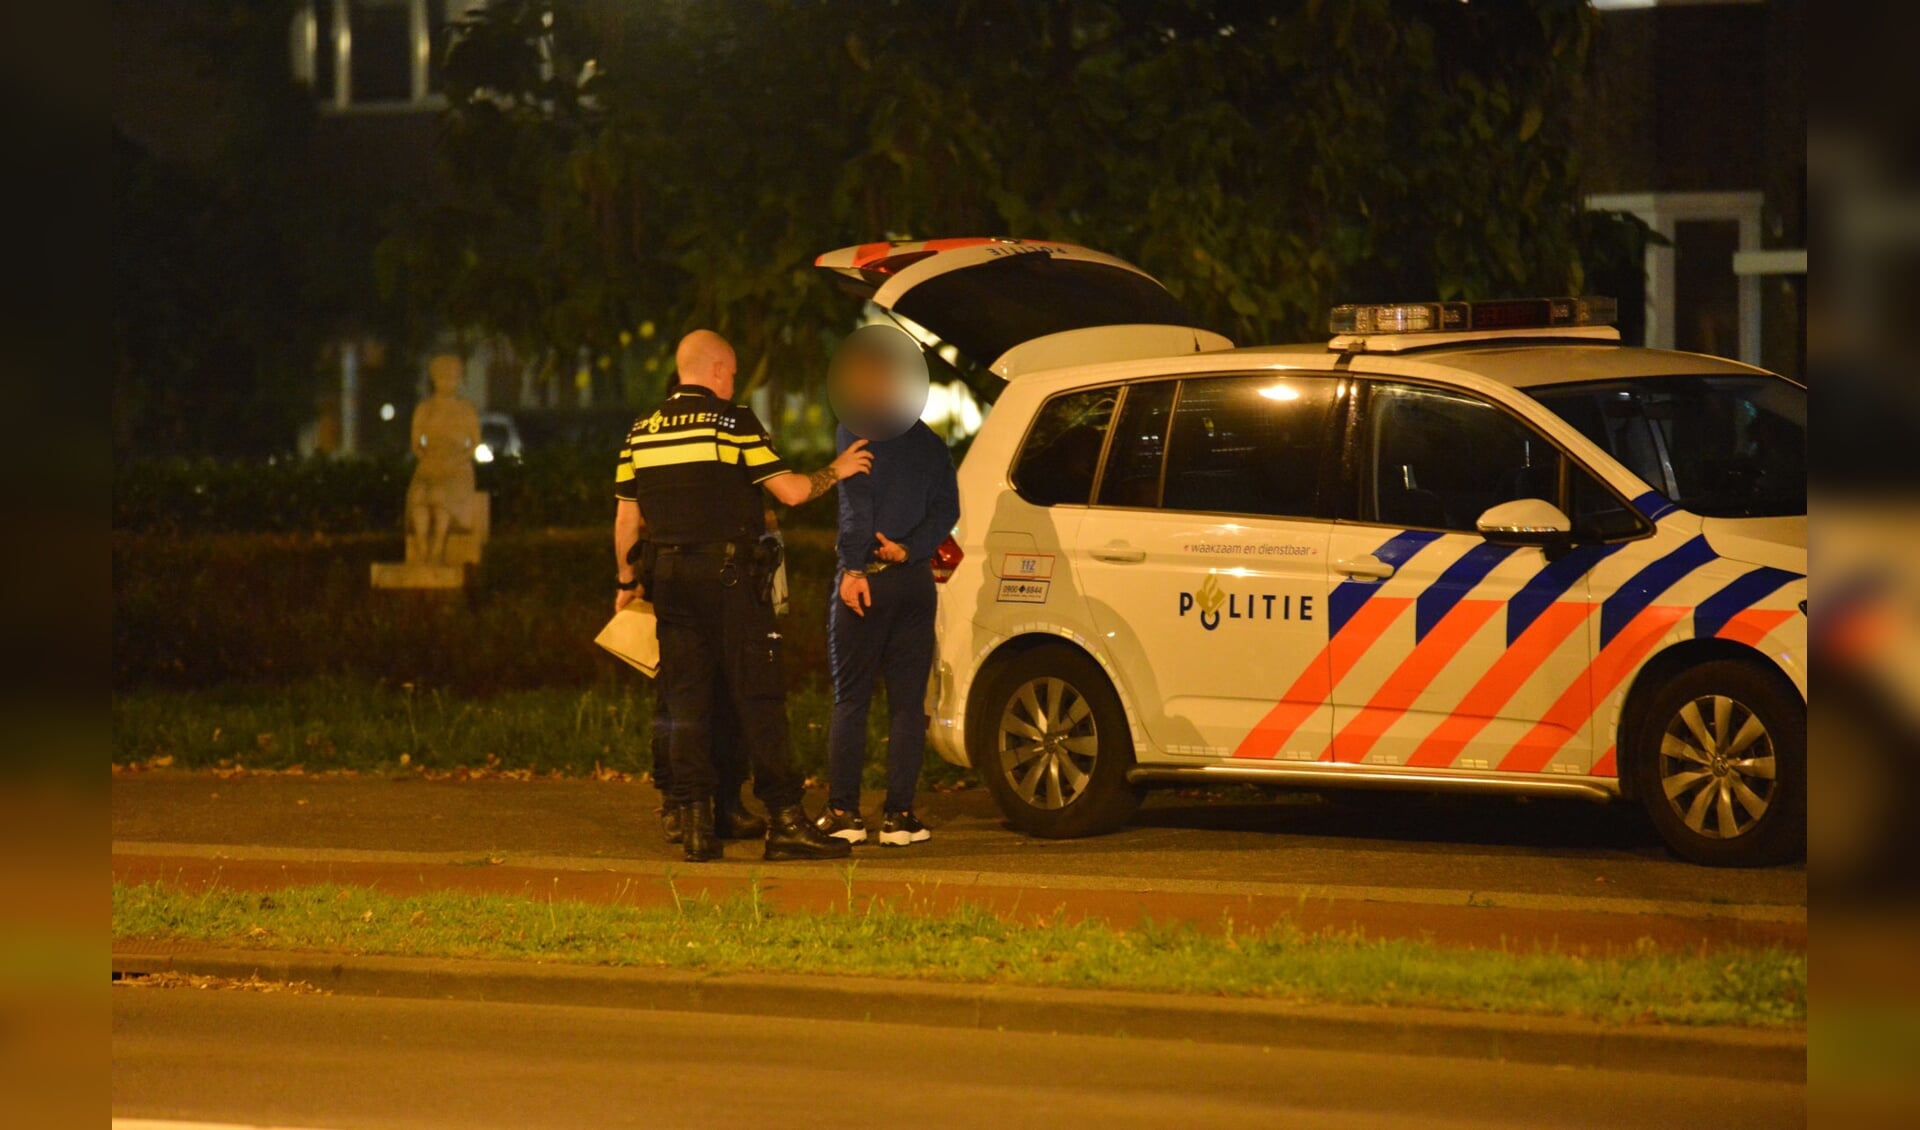 De politie heeft drie personen aangehouden op de Julianalaan.